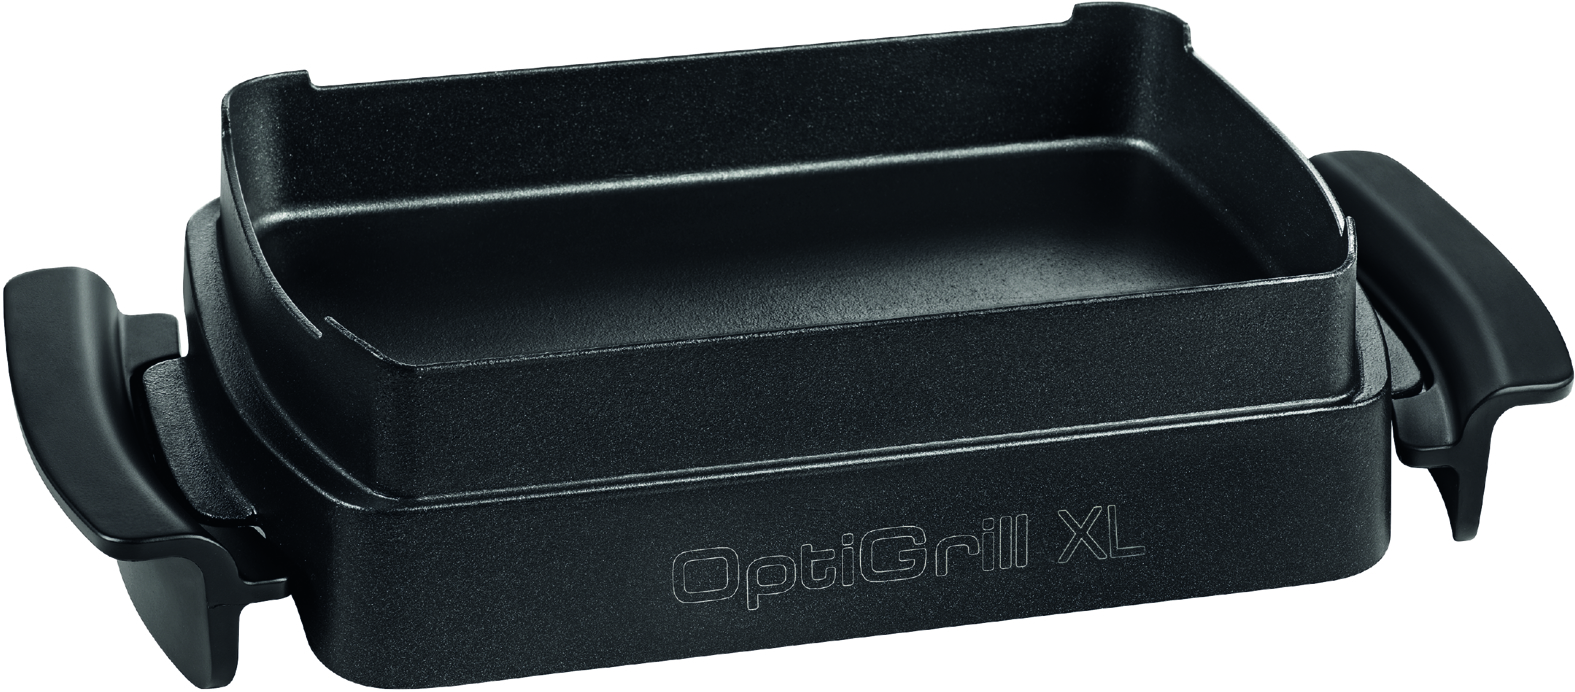 OptiGrill erhält Zubehör-Zuwachs: Unbegrenzte Kochvielfalt mit der neuen  OptiGrill Backschale XL von Tefal